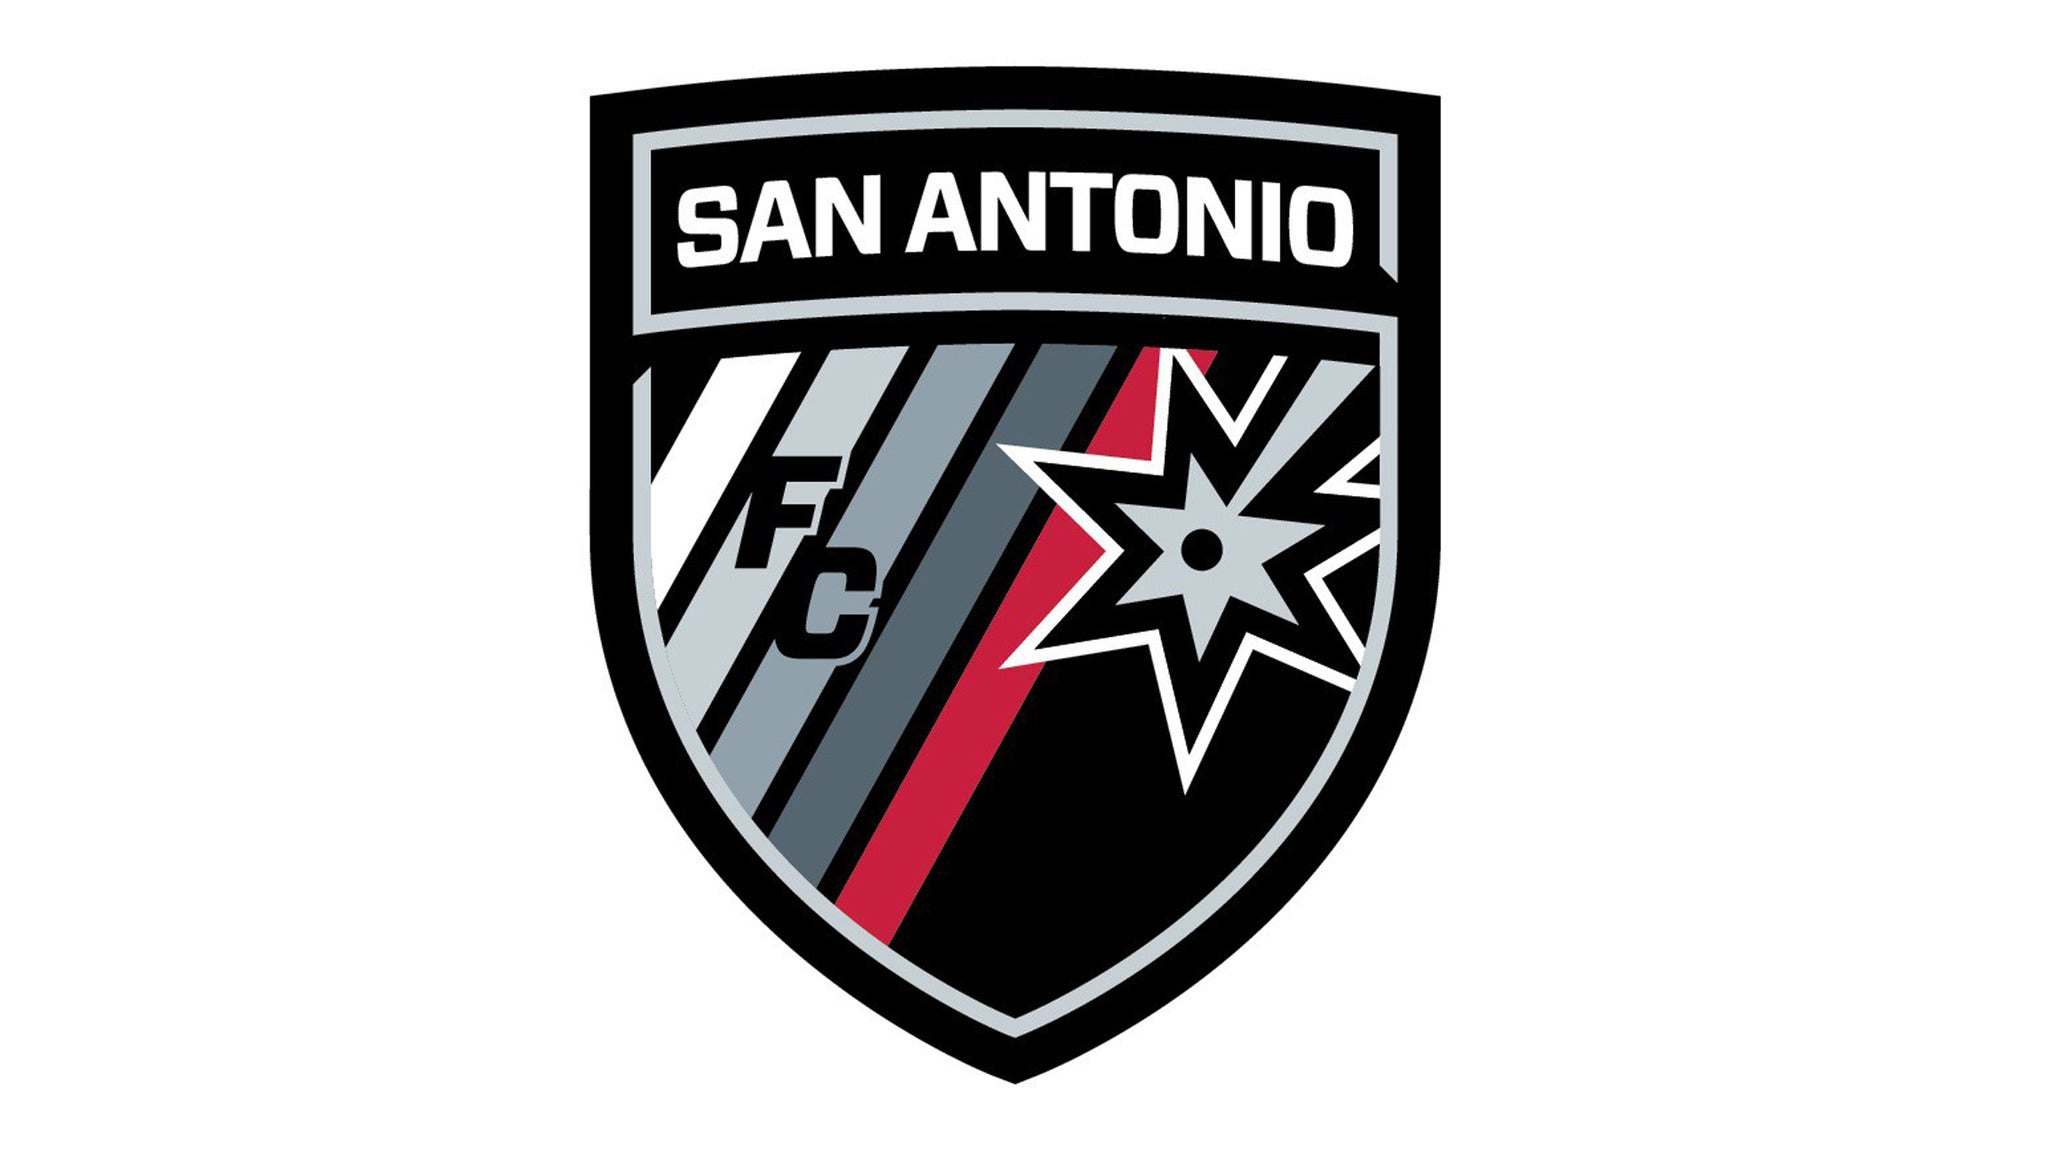 San Antonio FC vs. New Mexico United in San Antonio promo photo for Fan Club presale offer code